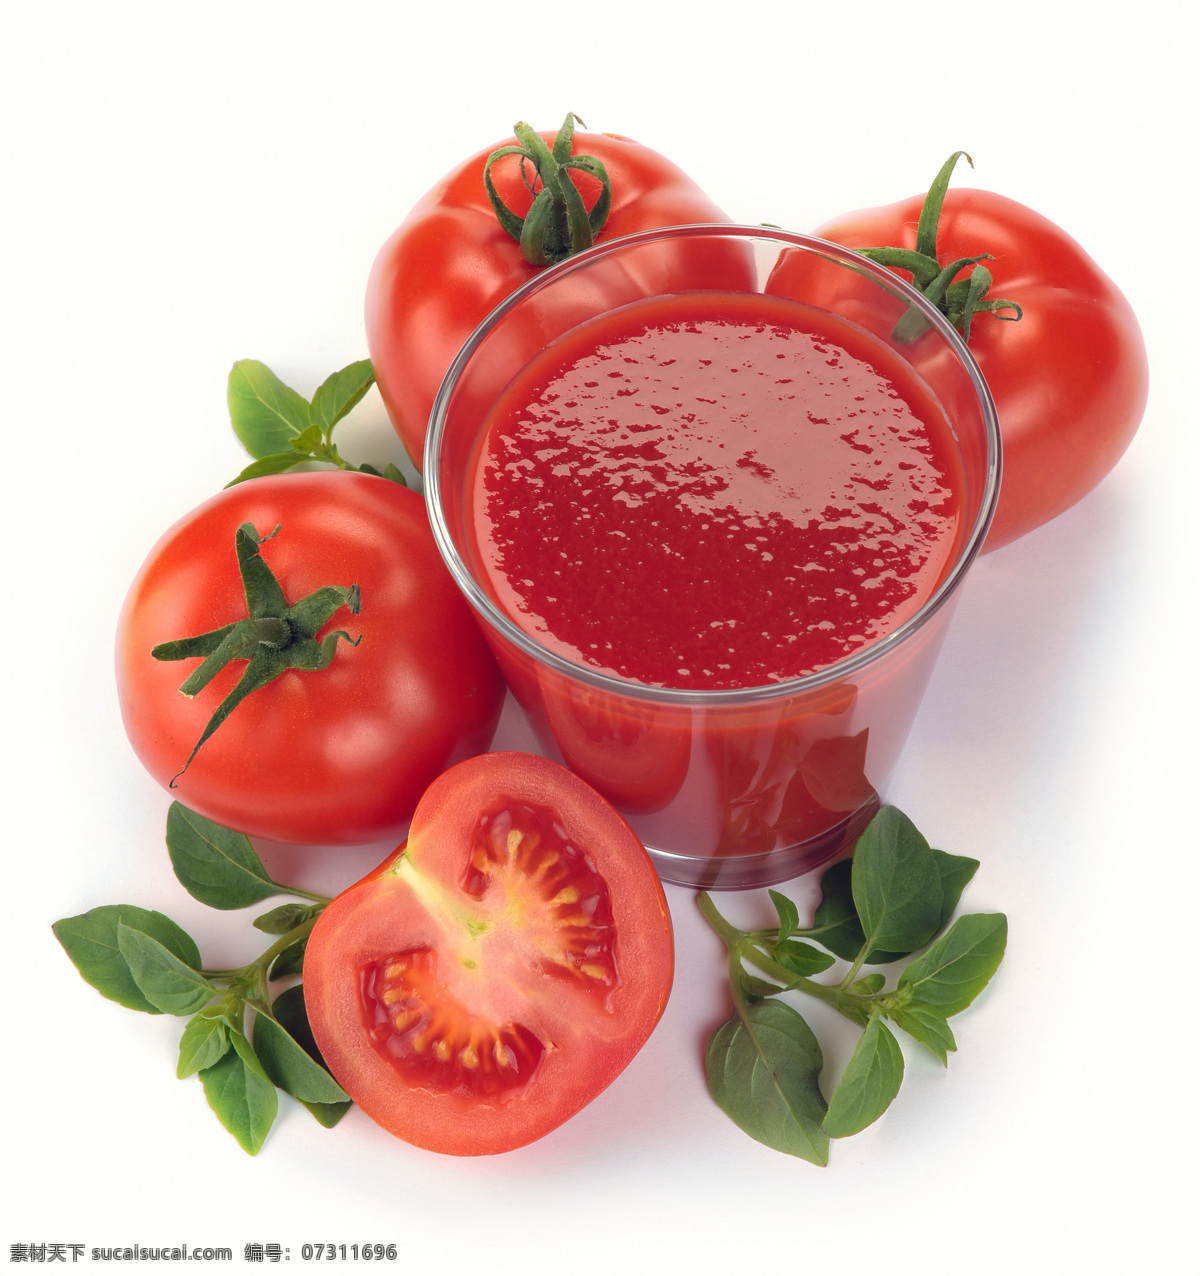 西红柿苹果汁,西红柿苹果汁的家常做法 - 美食杰西红柿苹果汁做法大全